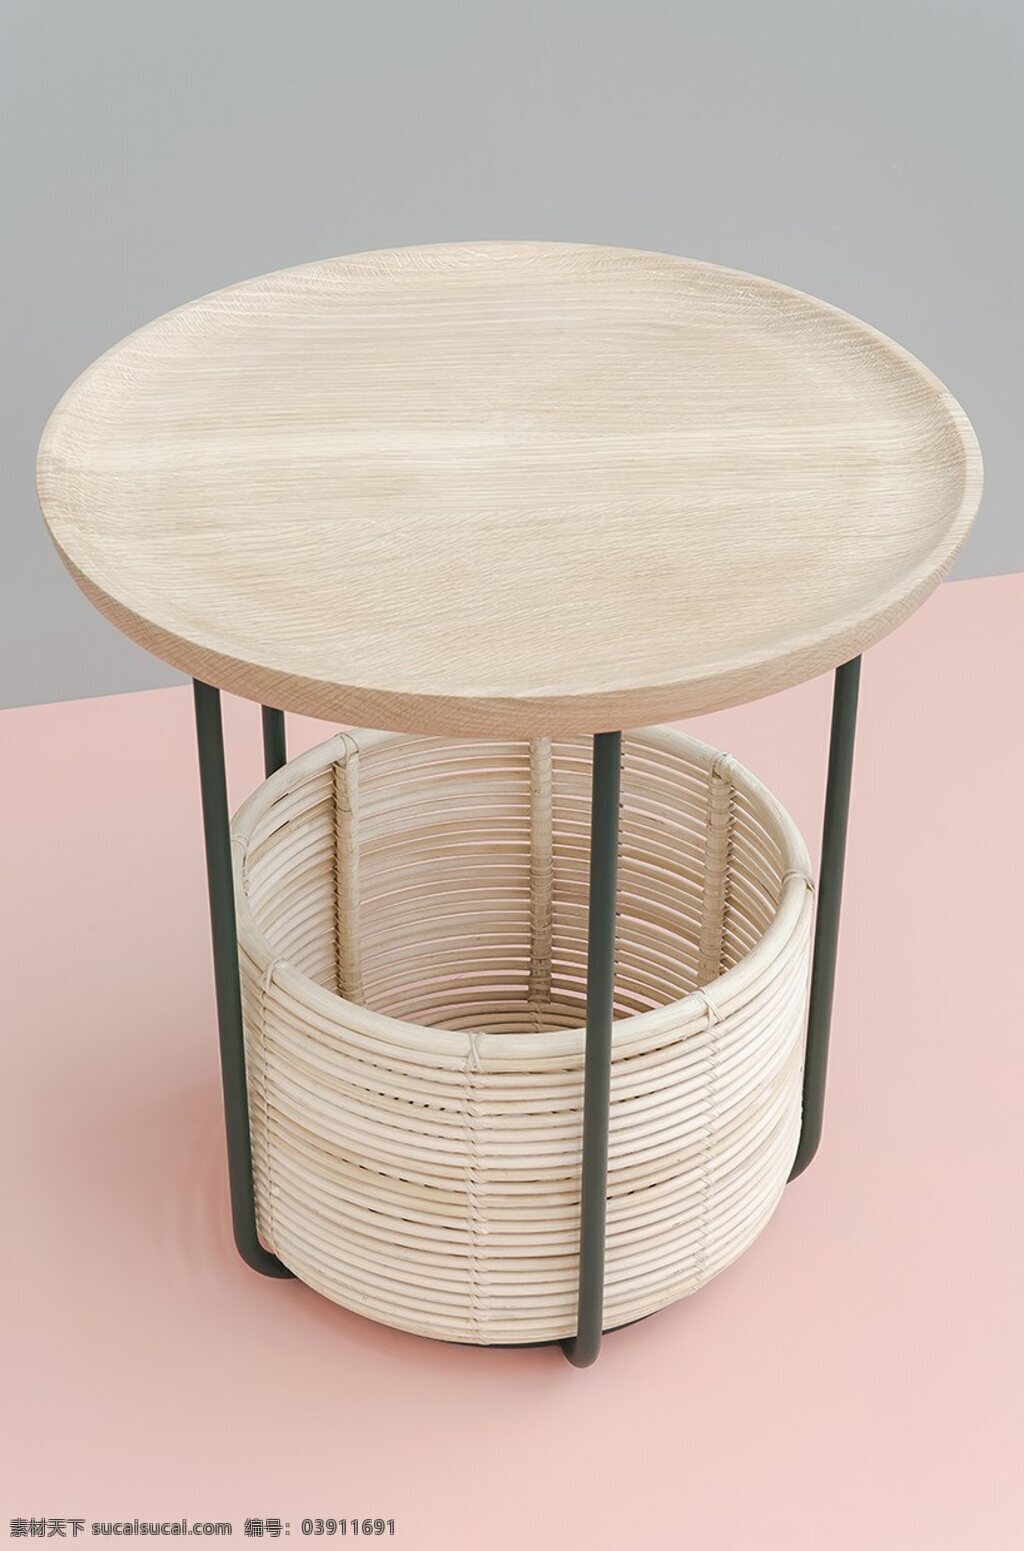 创意 椅子 桌子 凳子 产品设计 工业设计 家居 生活